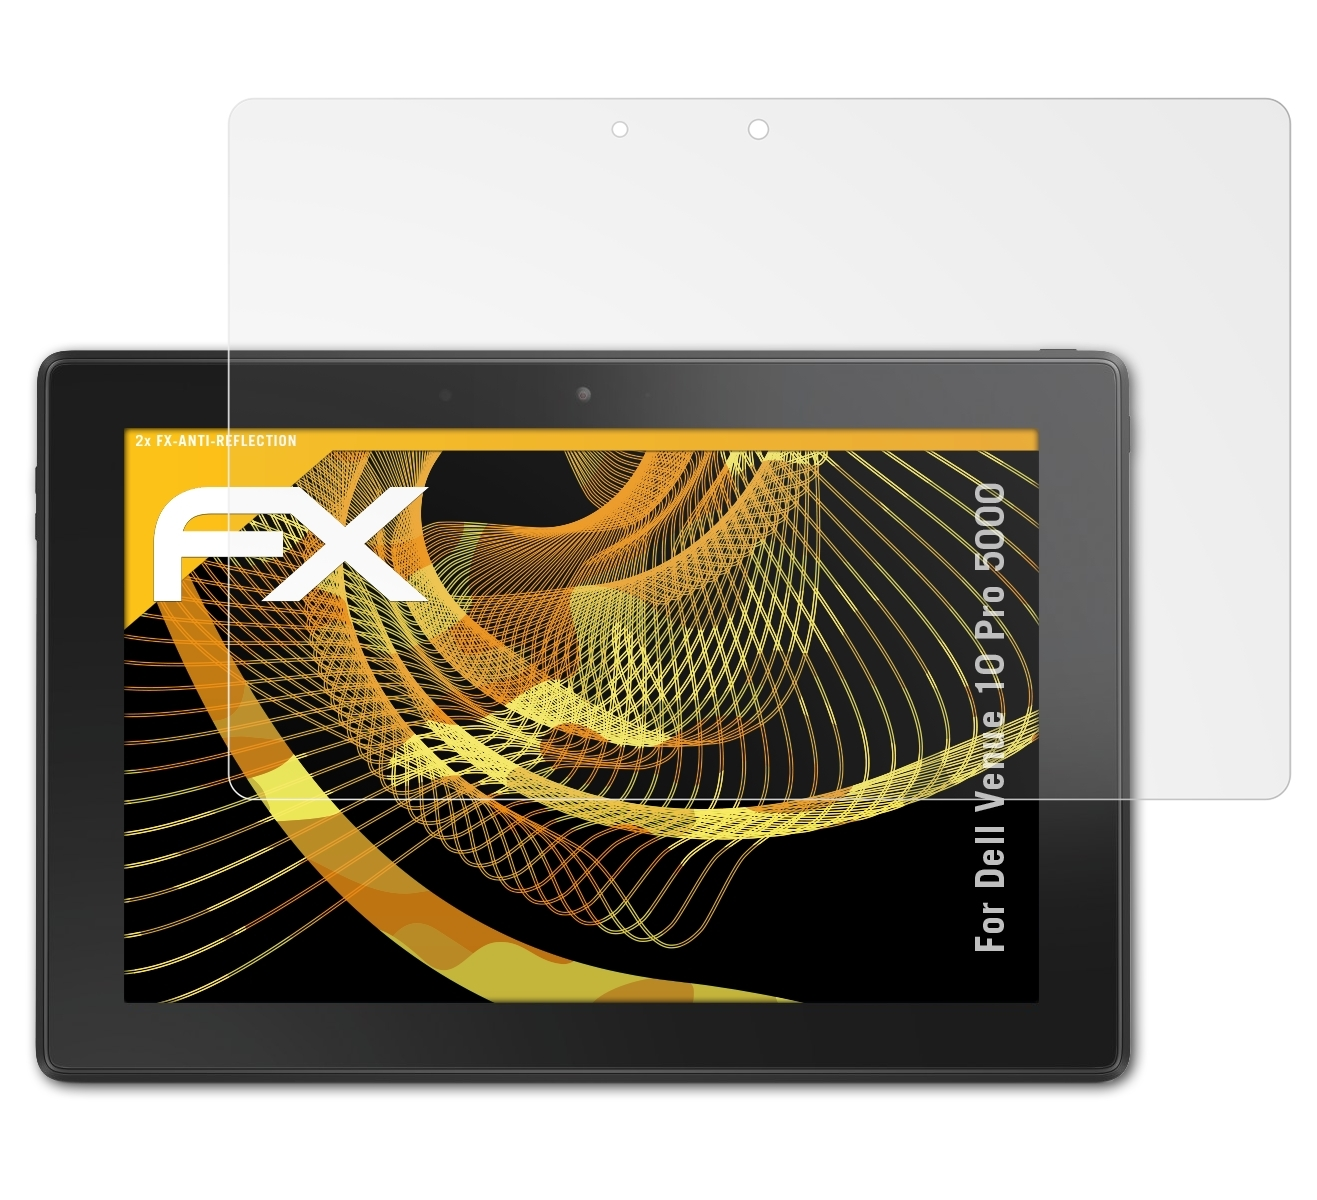 ATFOLIX 2x FX-Antireflex Displayschutz(für Dell 5000) Pro Venue 10